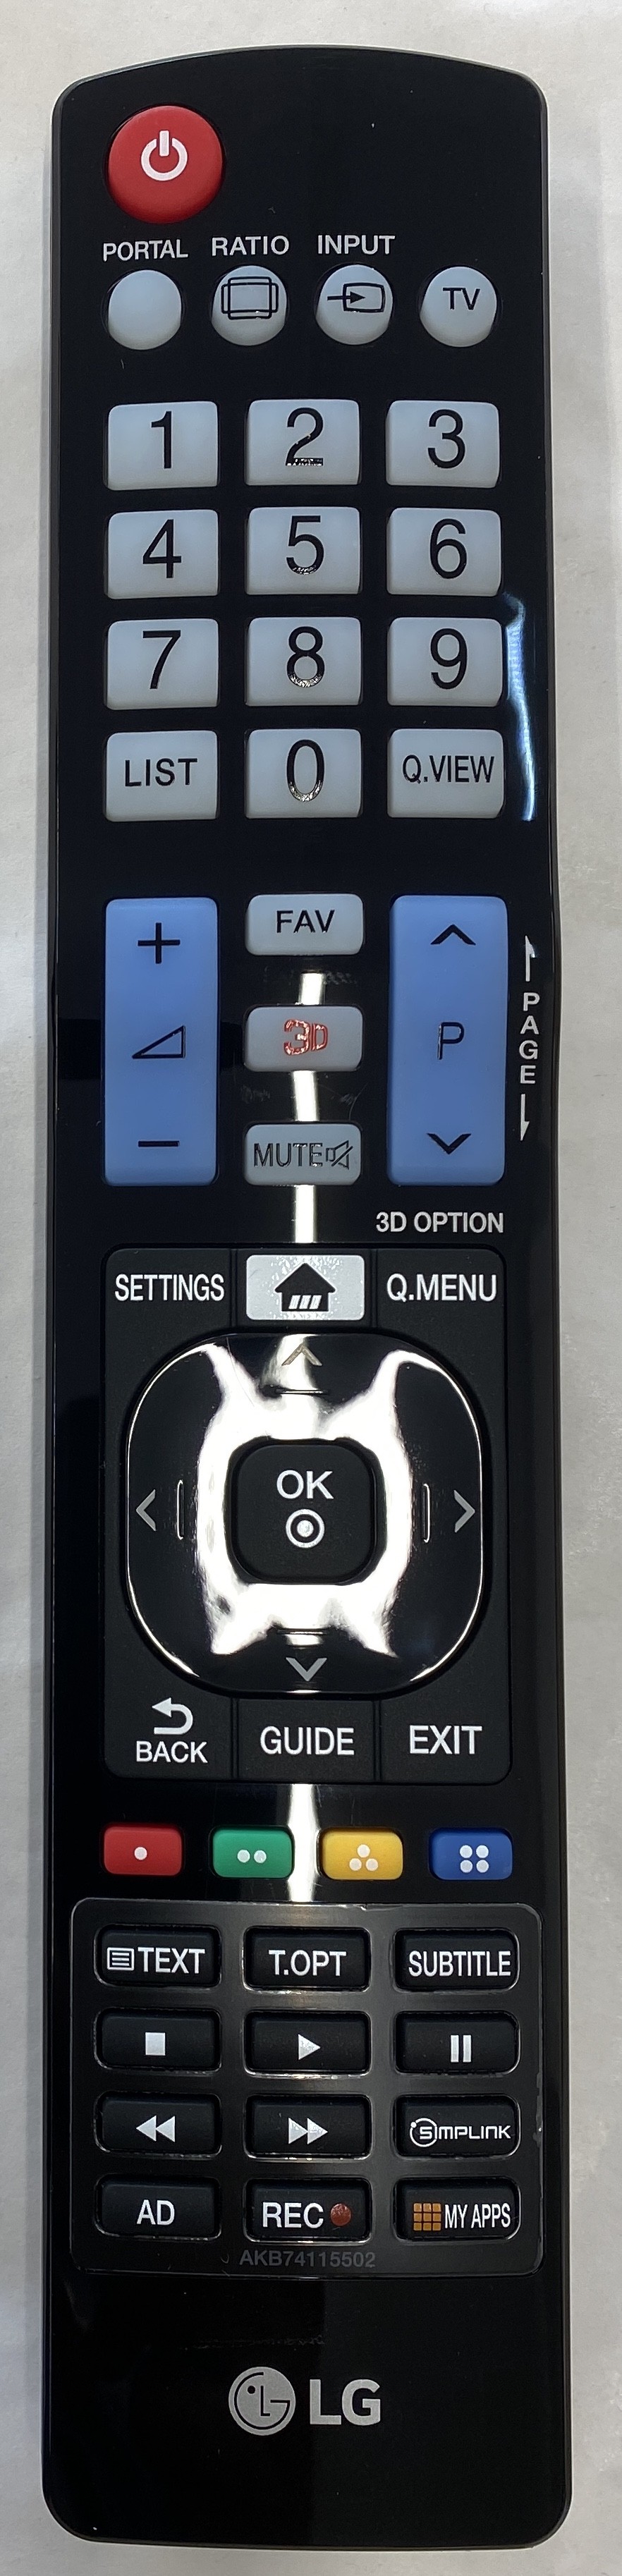 LG 42LD450 Remote Control Original